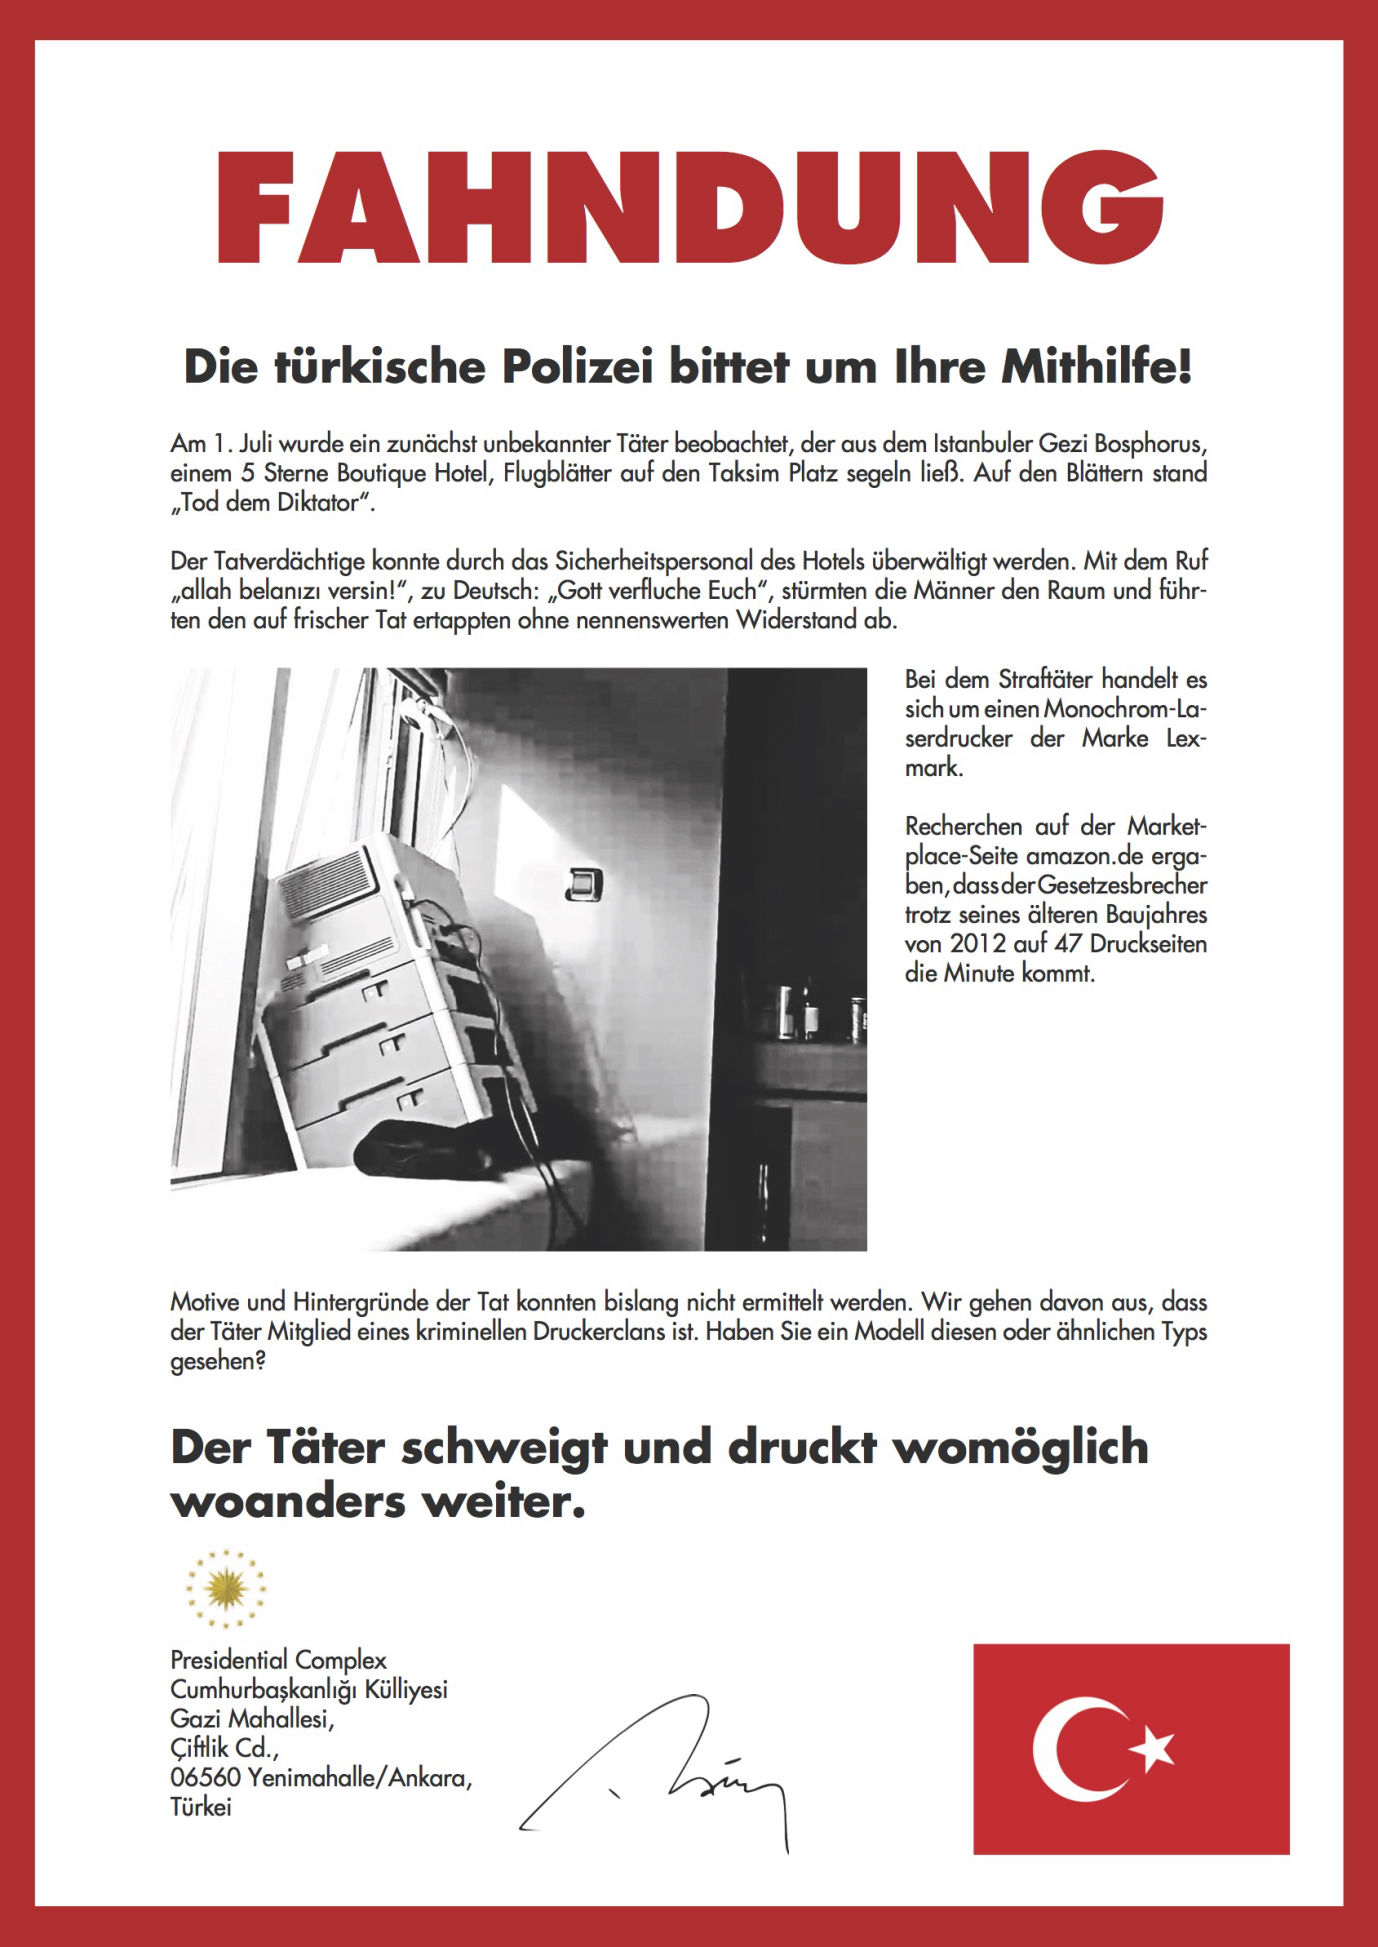 Fahndung: Drucker. Scholl 2017: Flugblätter gegen Diktatur, Flugblätter Türkei